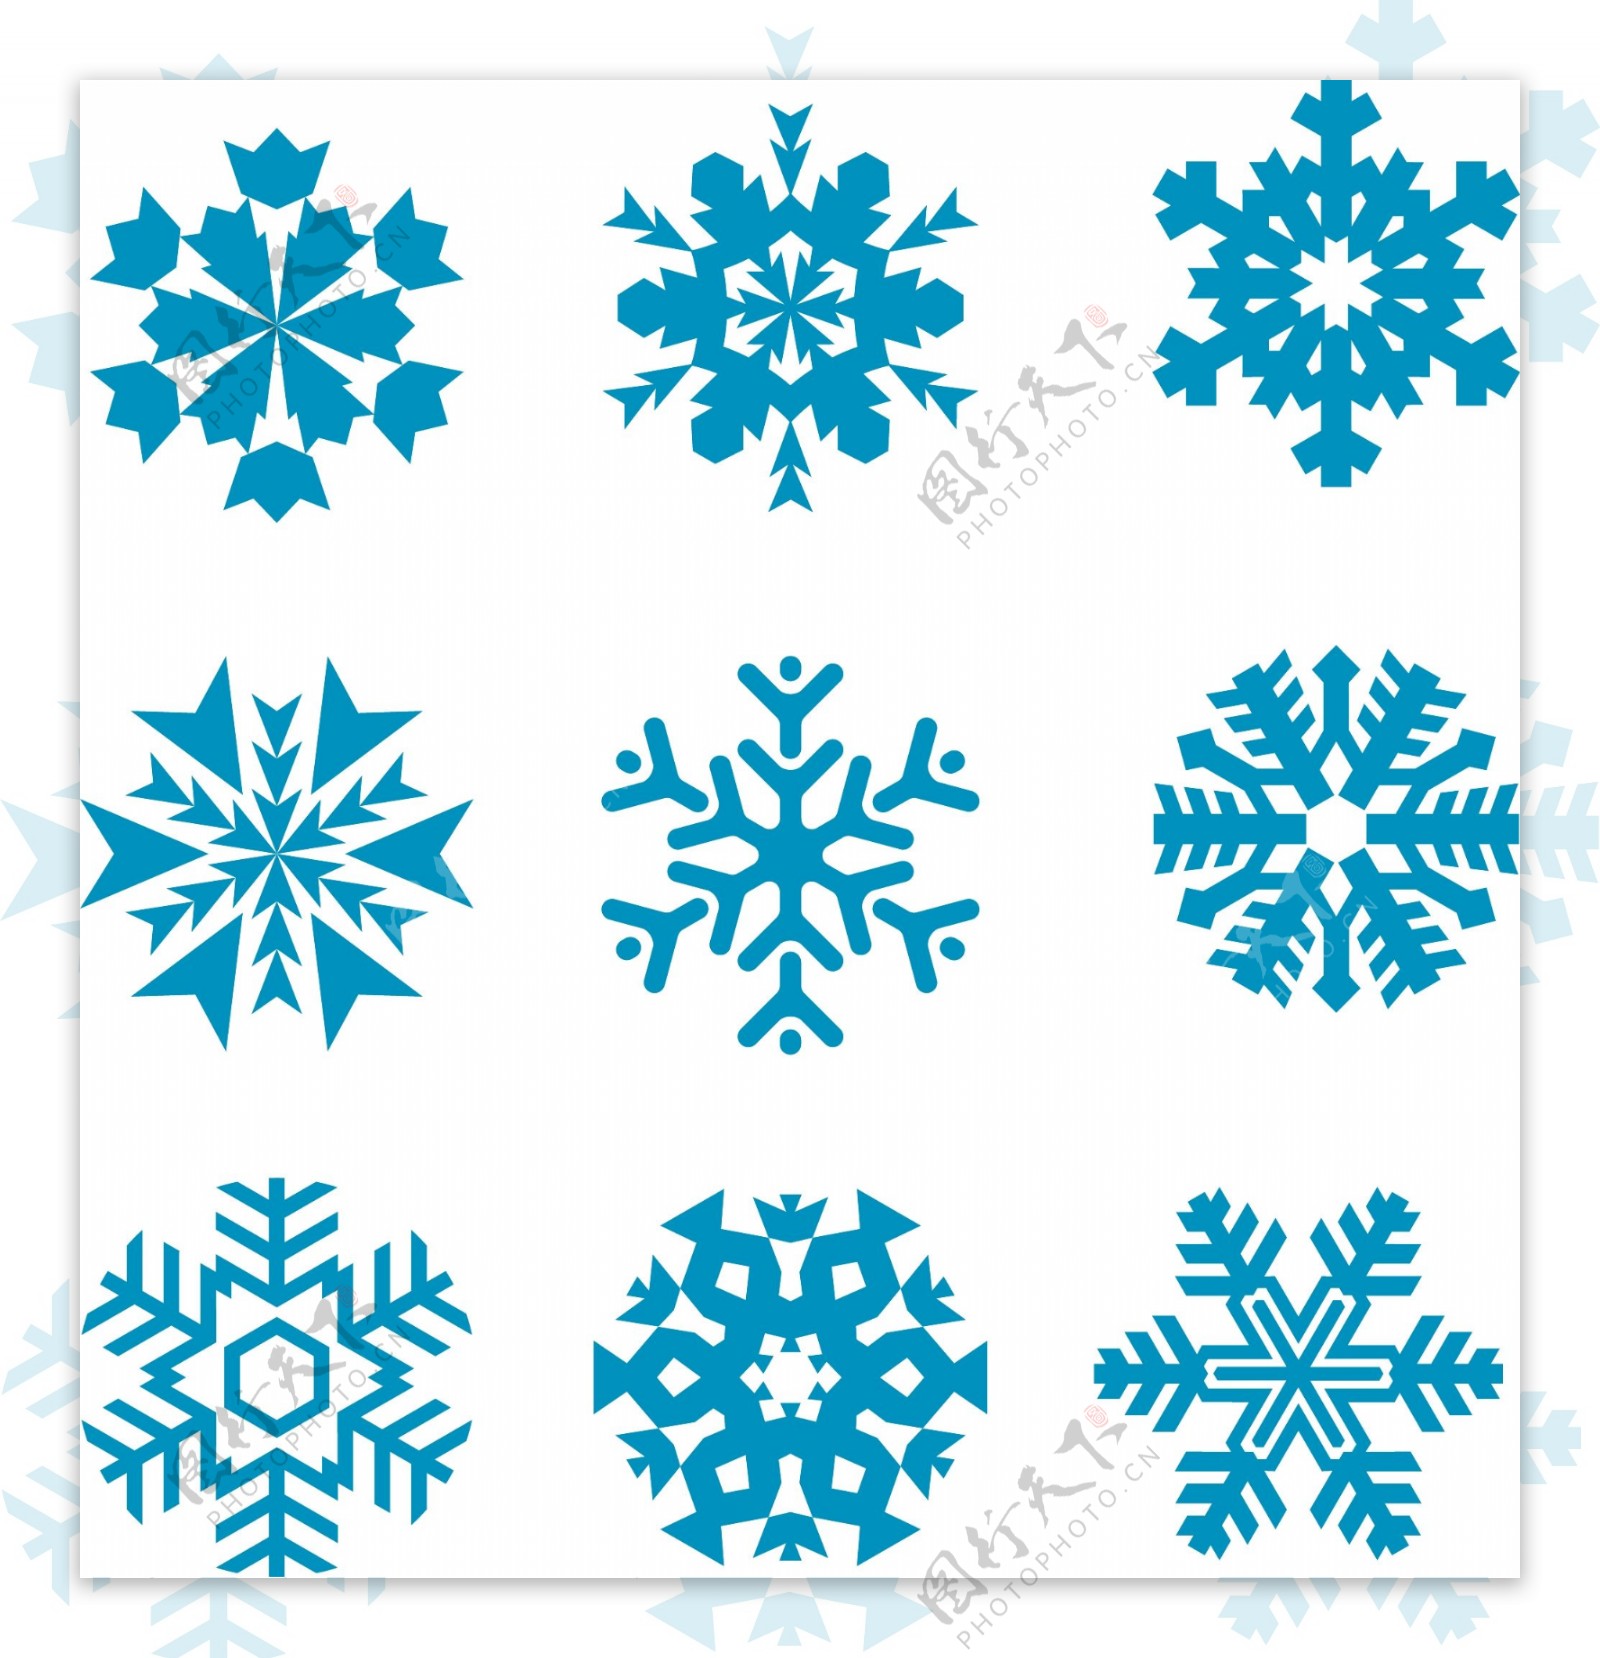 冬日雪花装饰素材矢量设计图案集合